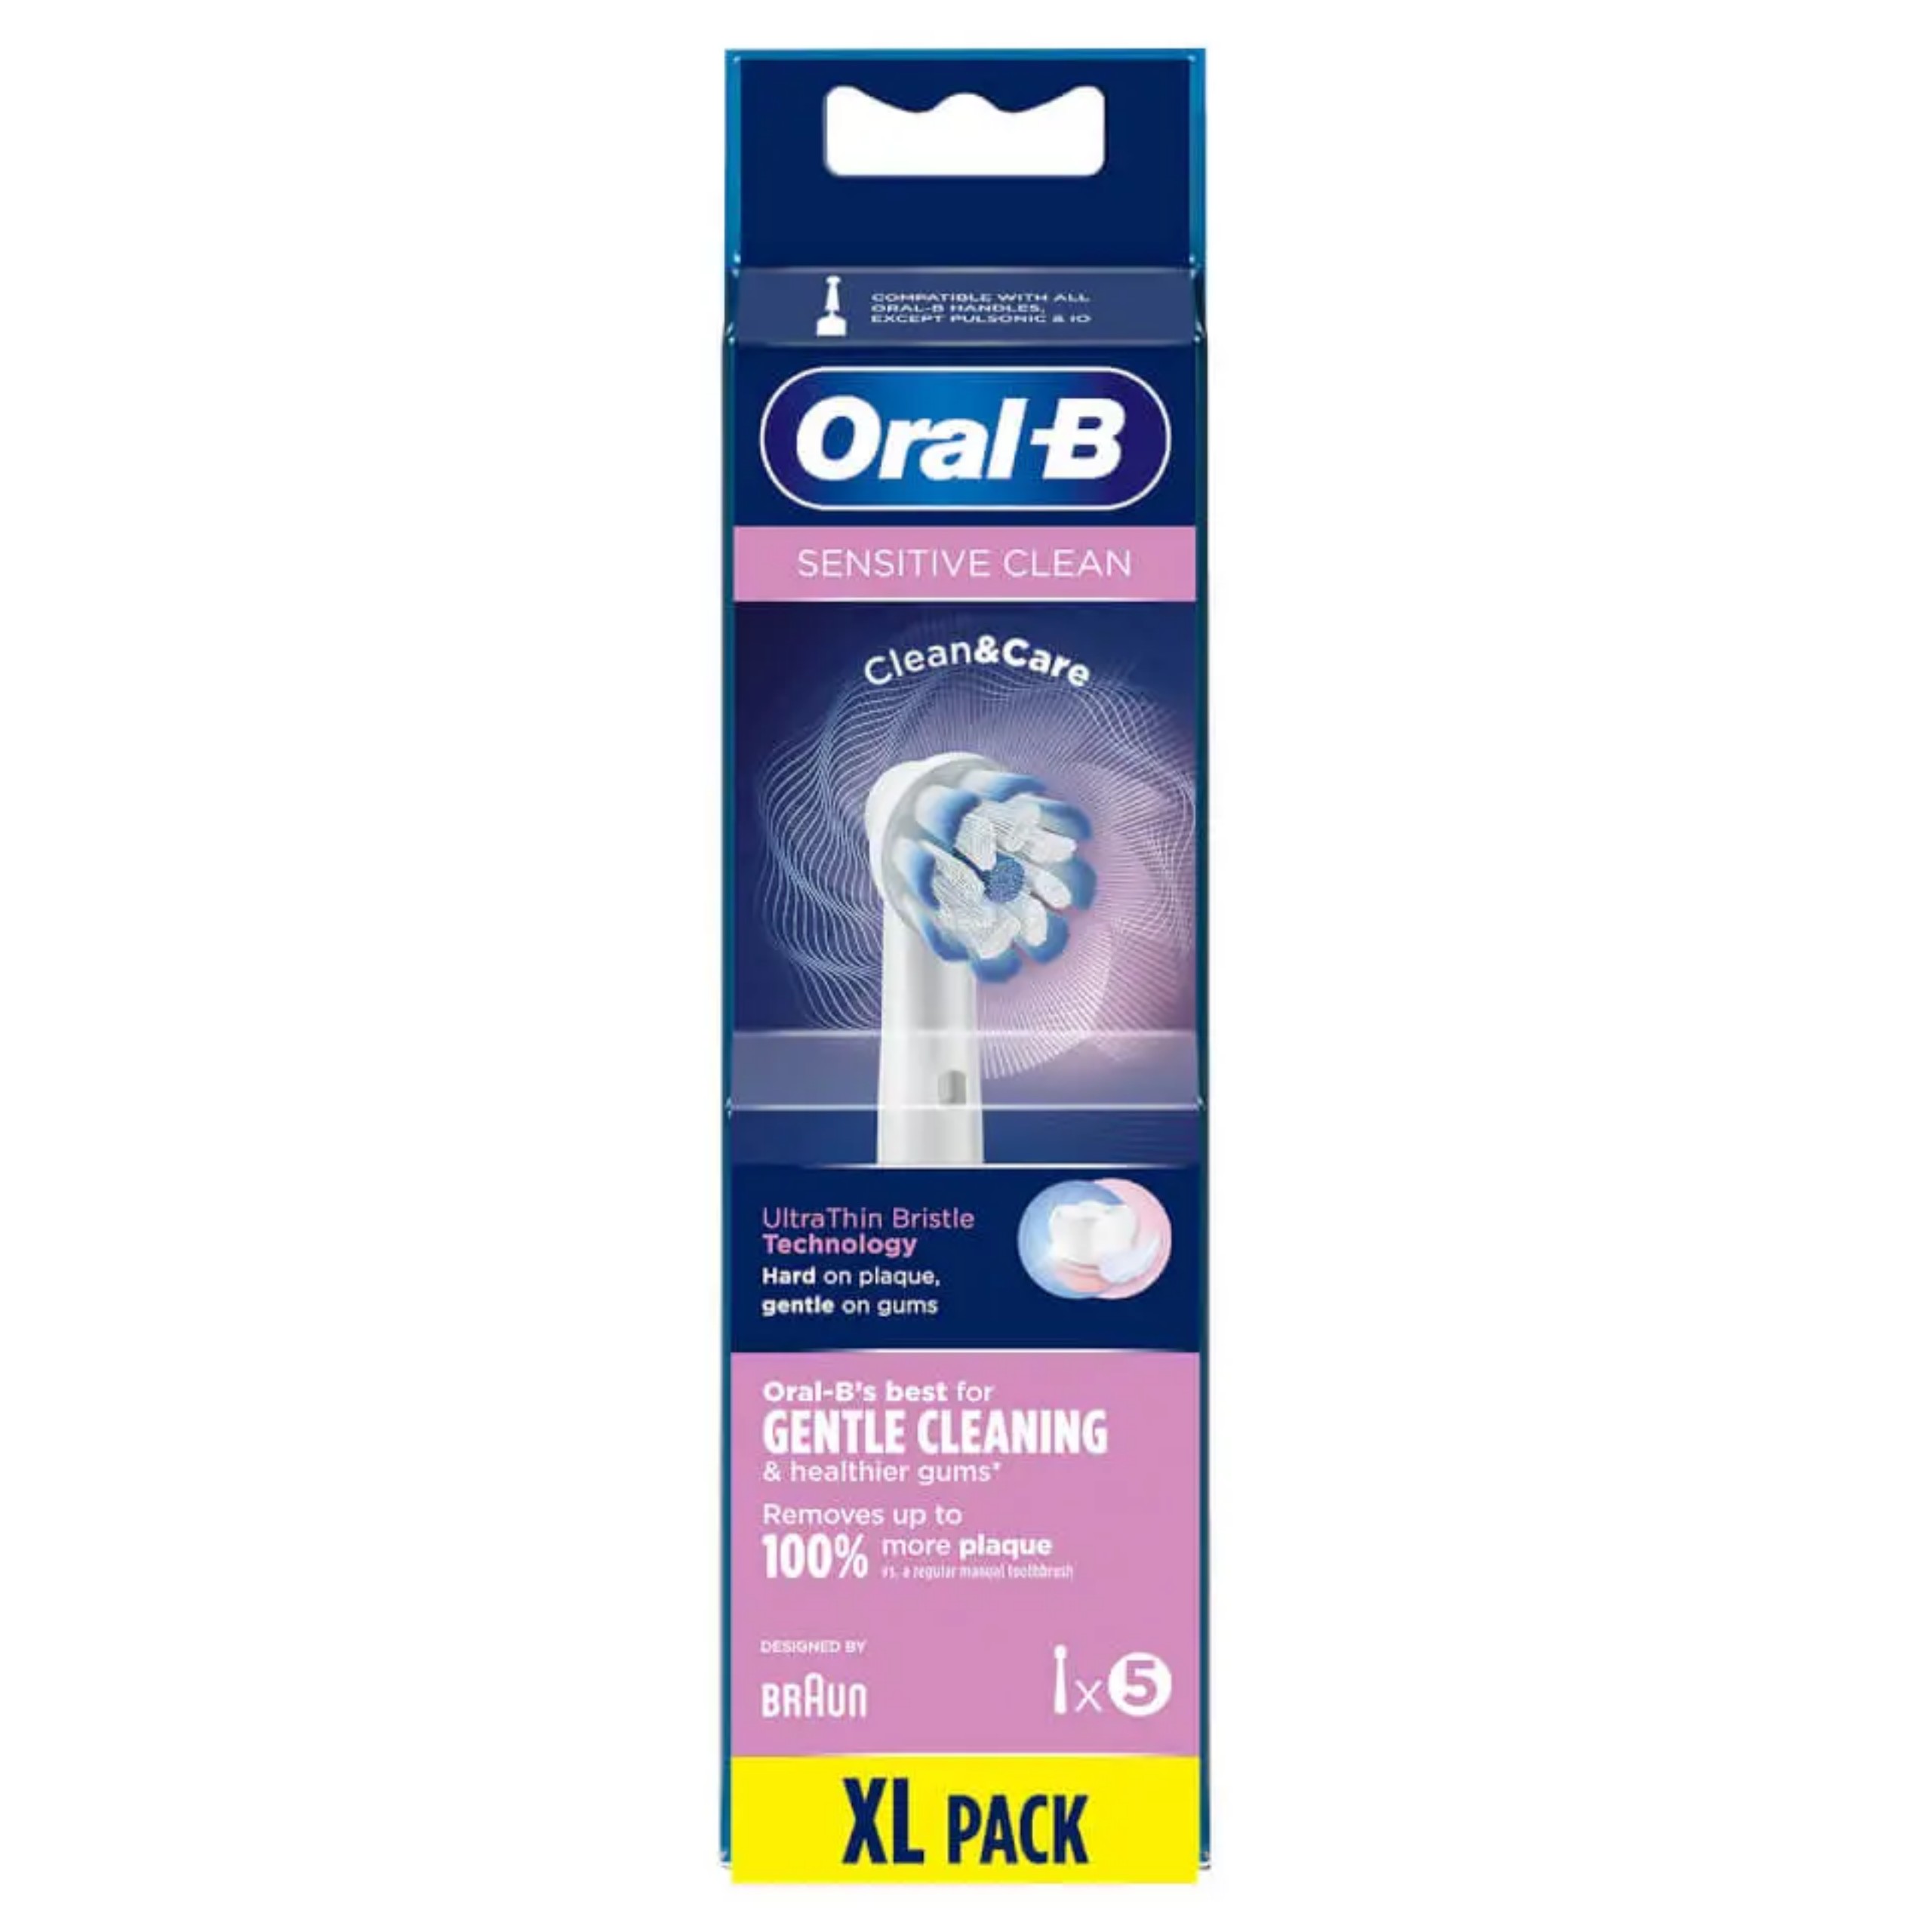 Bộ 5 đầu thay bàn chải đánh răng điện Oralb dành cho răng nhạy cảm + tặng